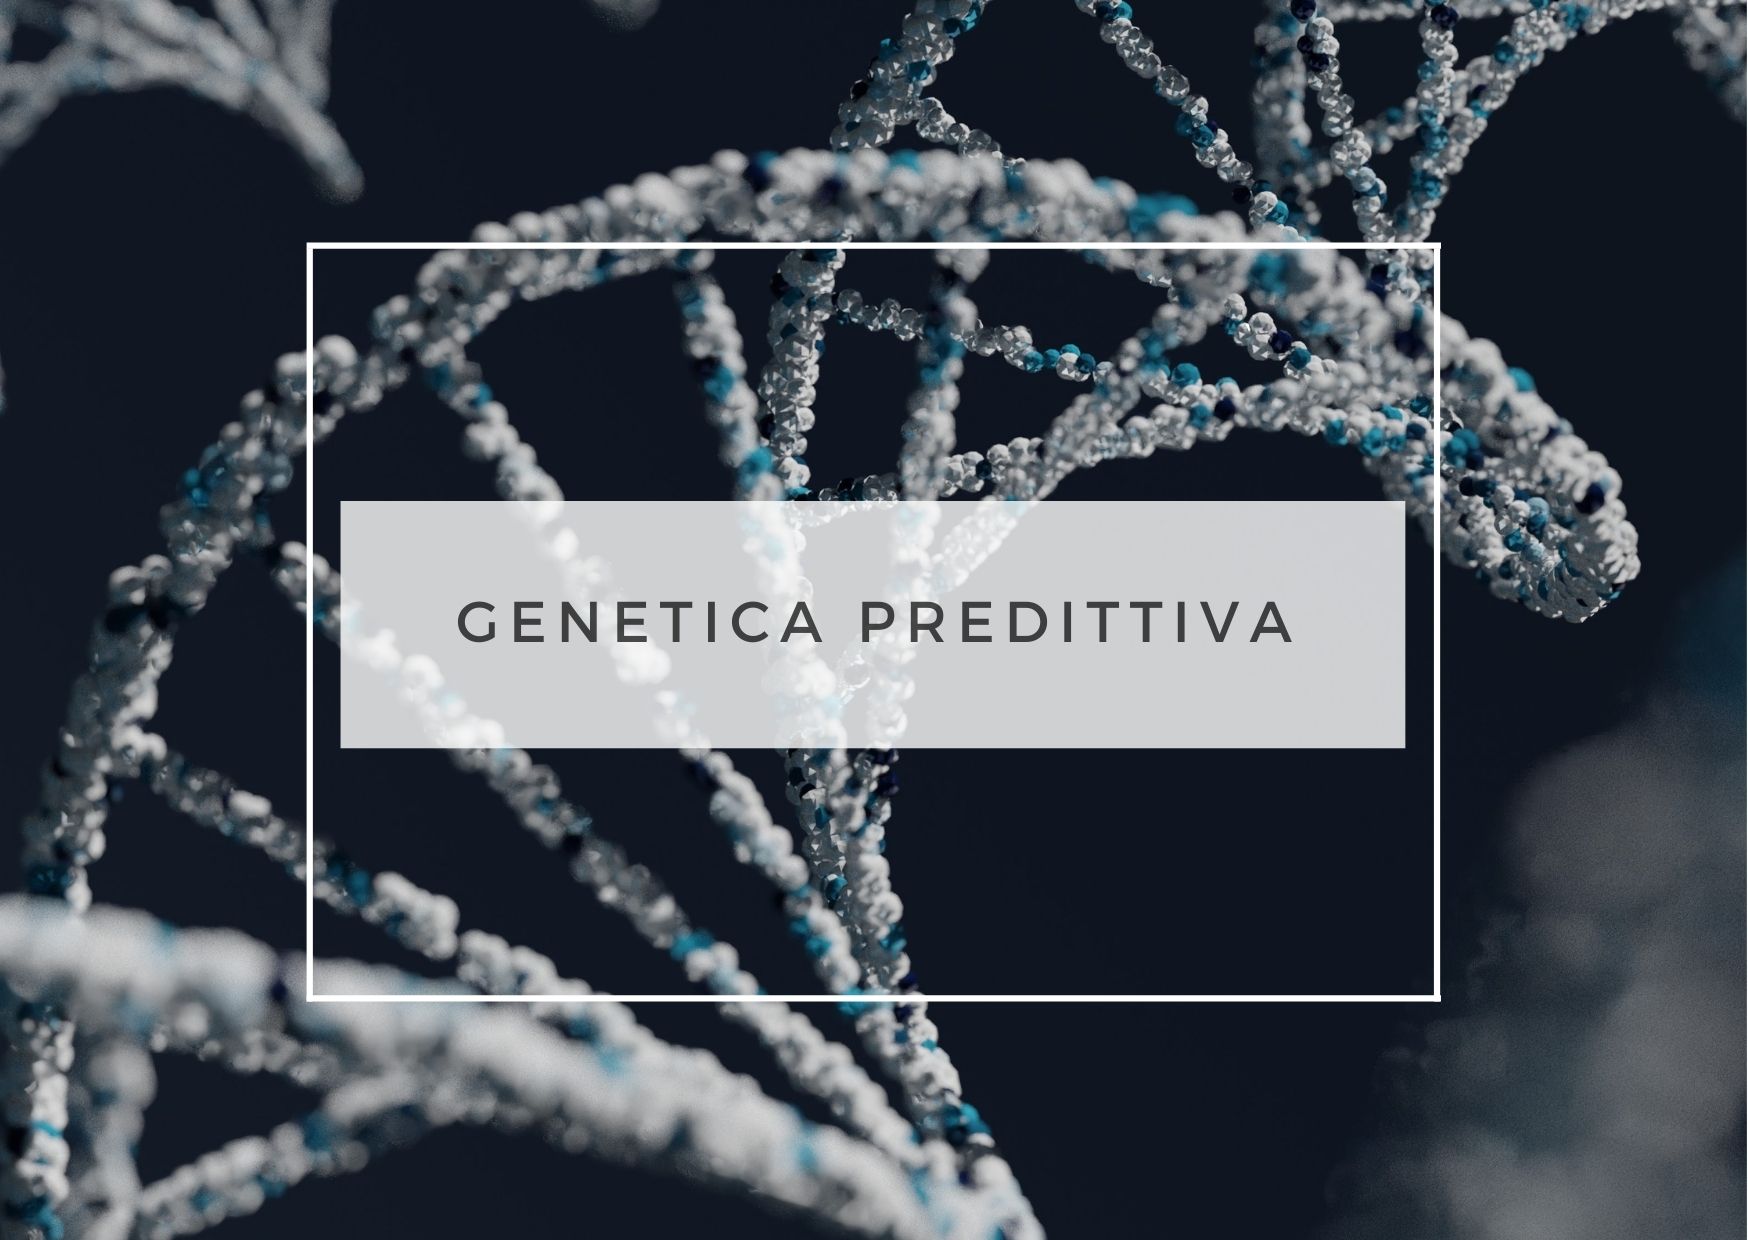 GENETICA PREDITTIVA